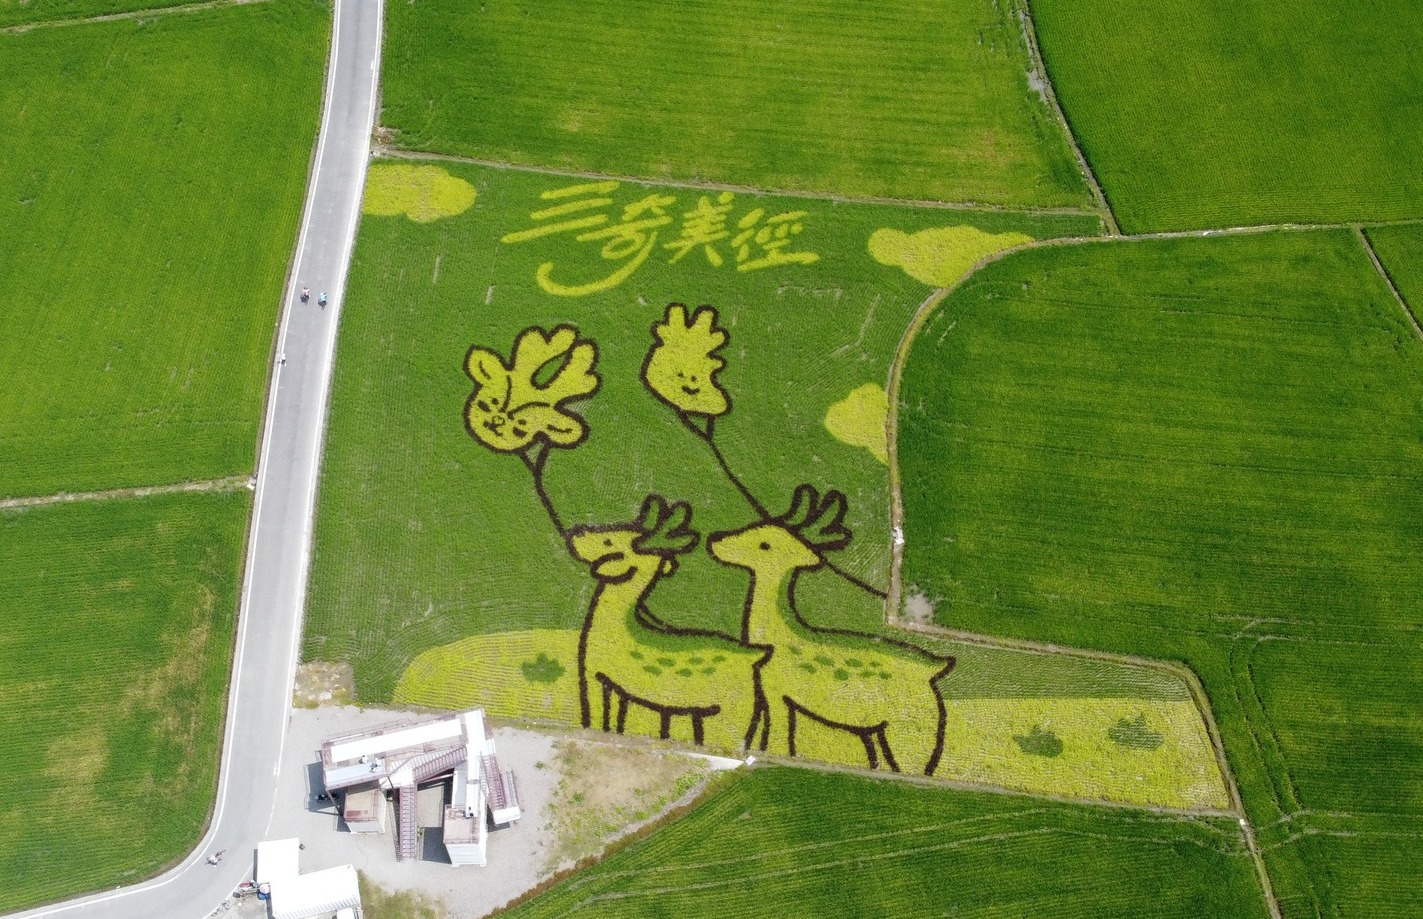 宜蘭三奇美徑 風箏嘉年華 搭熱氣球俯瞰彩繪稻田